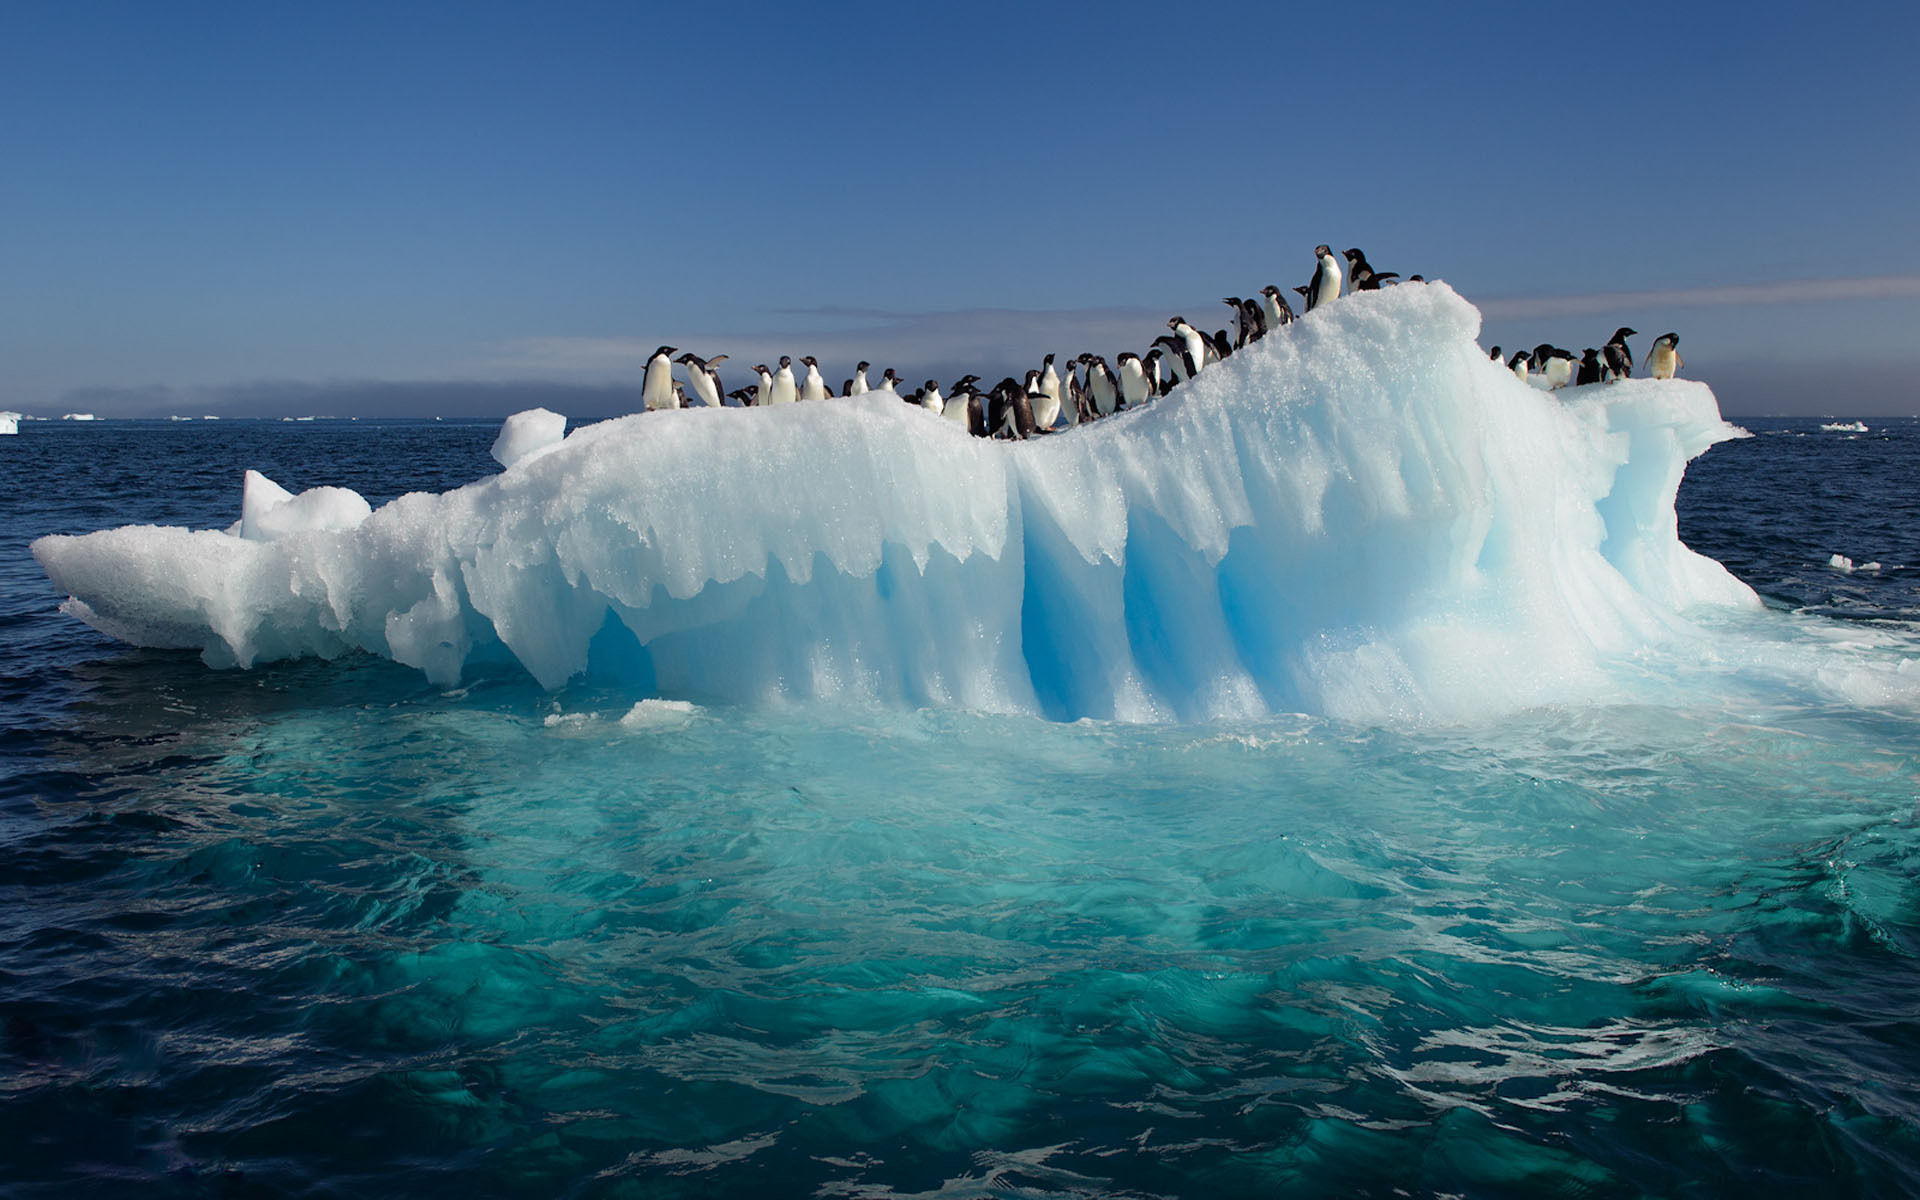  free download best desktop high resolution wallpapers of ocean ice